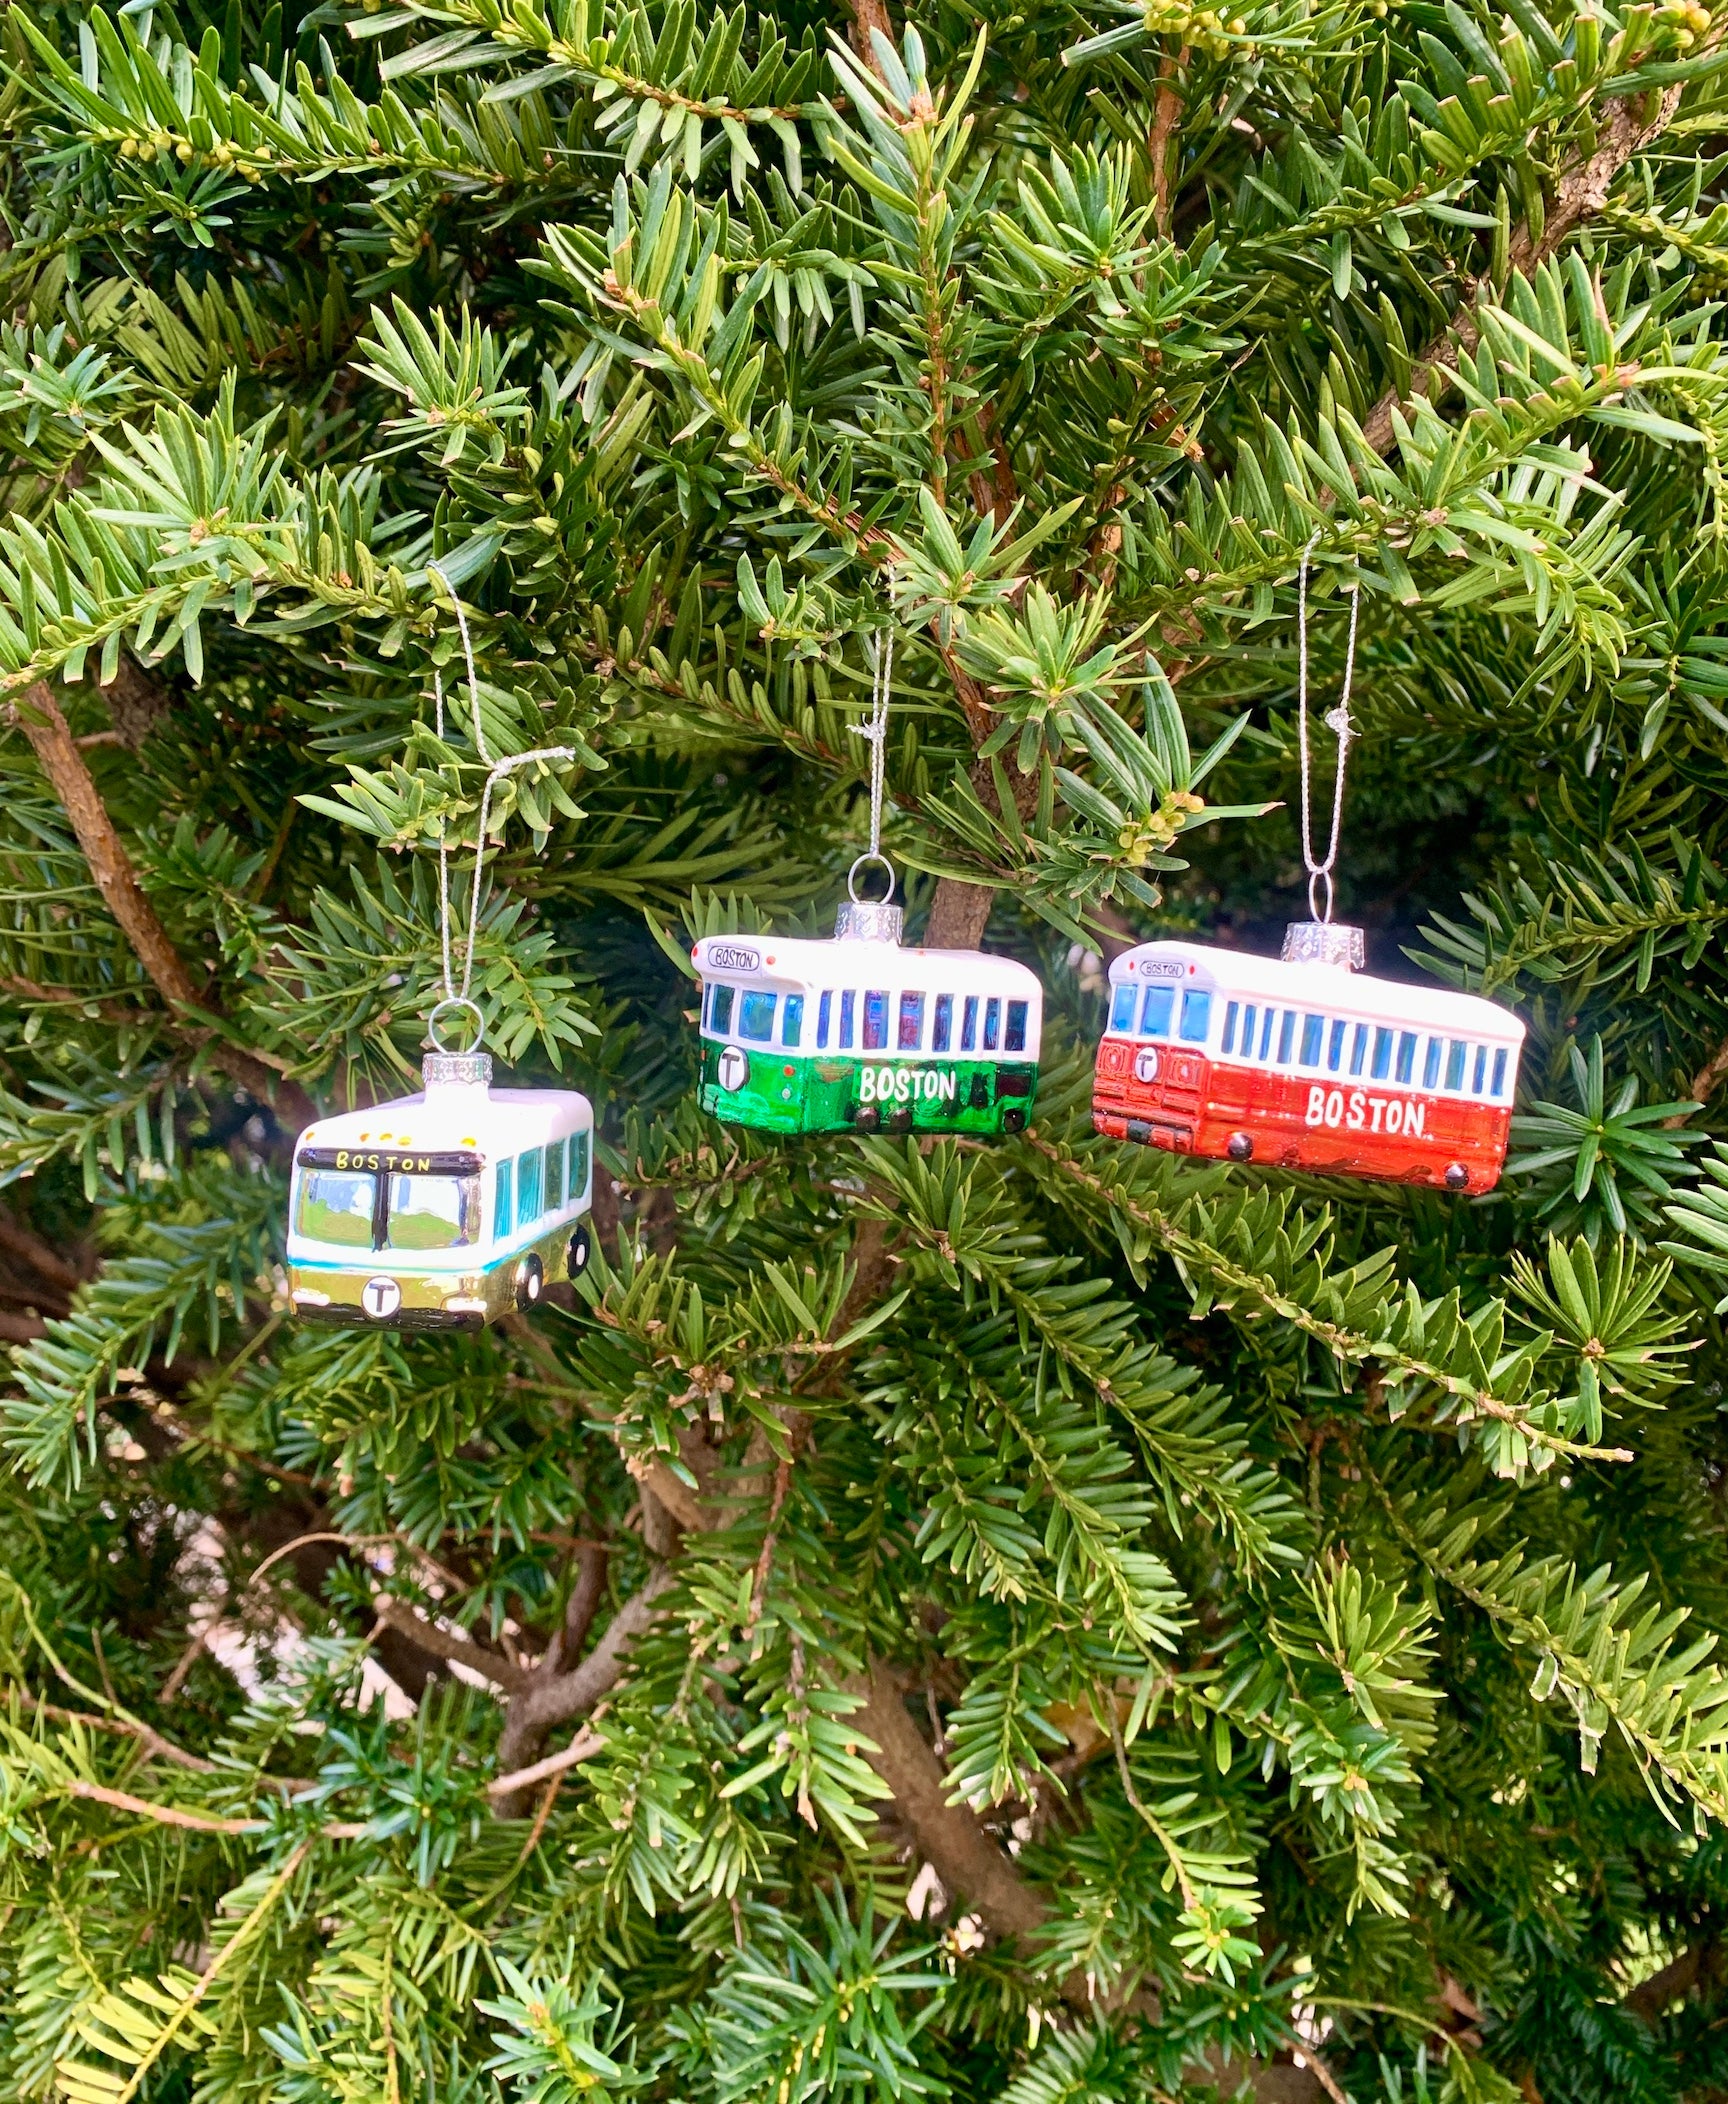 Boston MBTA Bus Trolley Train Christmas Tree Ornaments hanging on tree